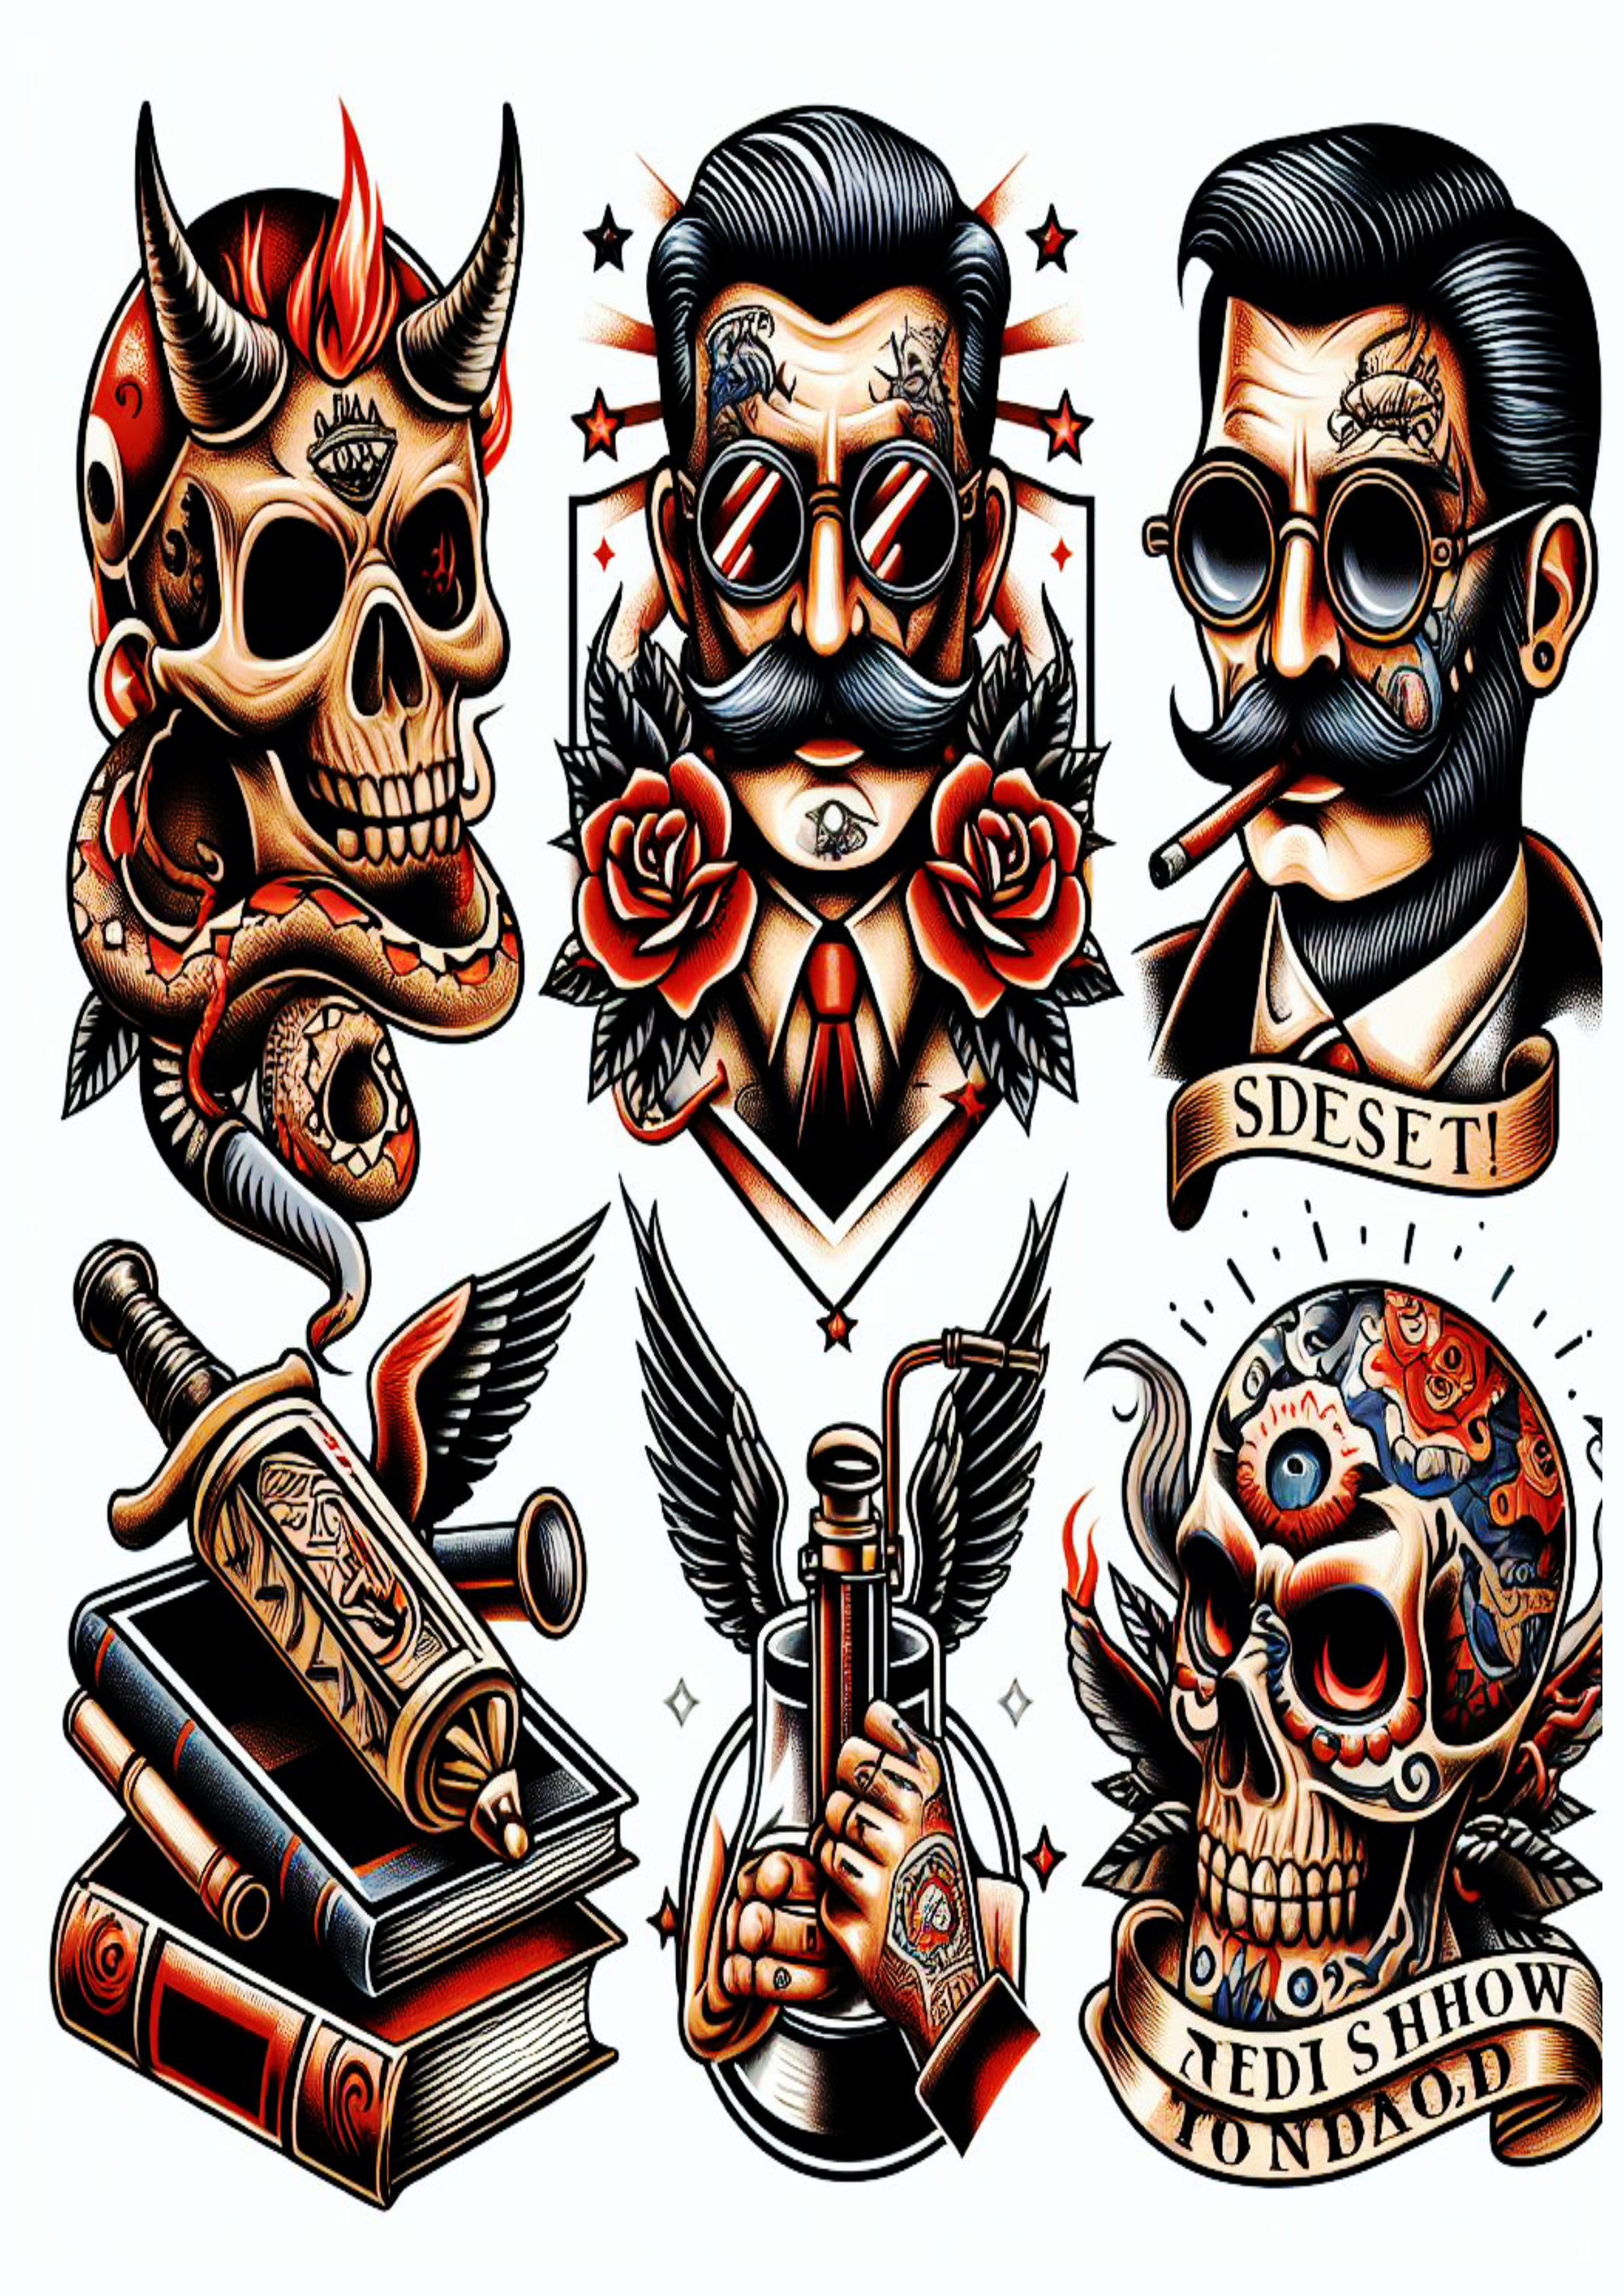 Pacote de imagens ideias para tatuagem png colorido arte conceitual grátis variadas caveiras skull artista